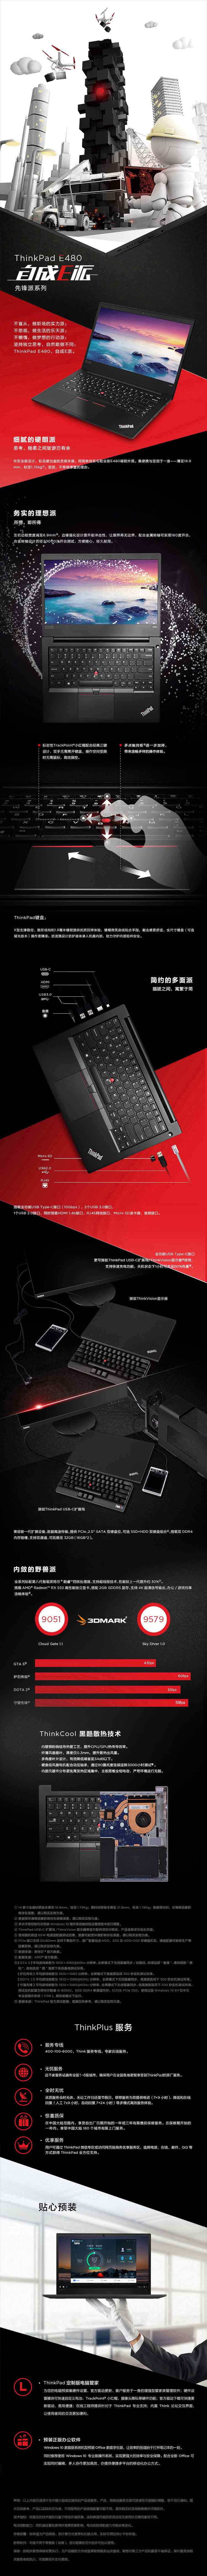 联想 ThinkPad E480 14.0寸 笔记本电脑